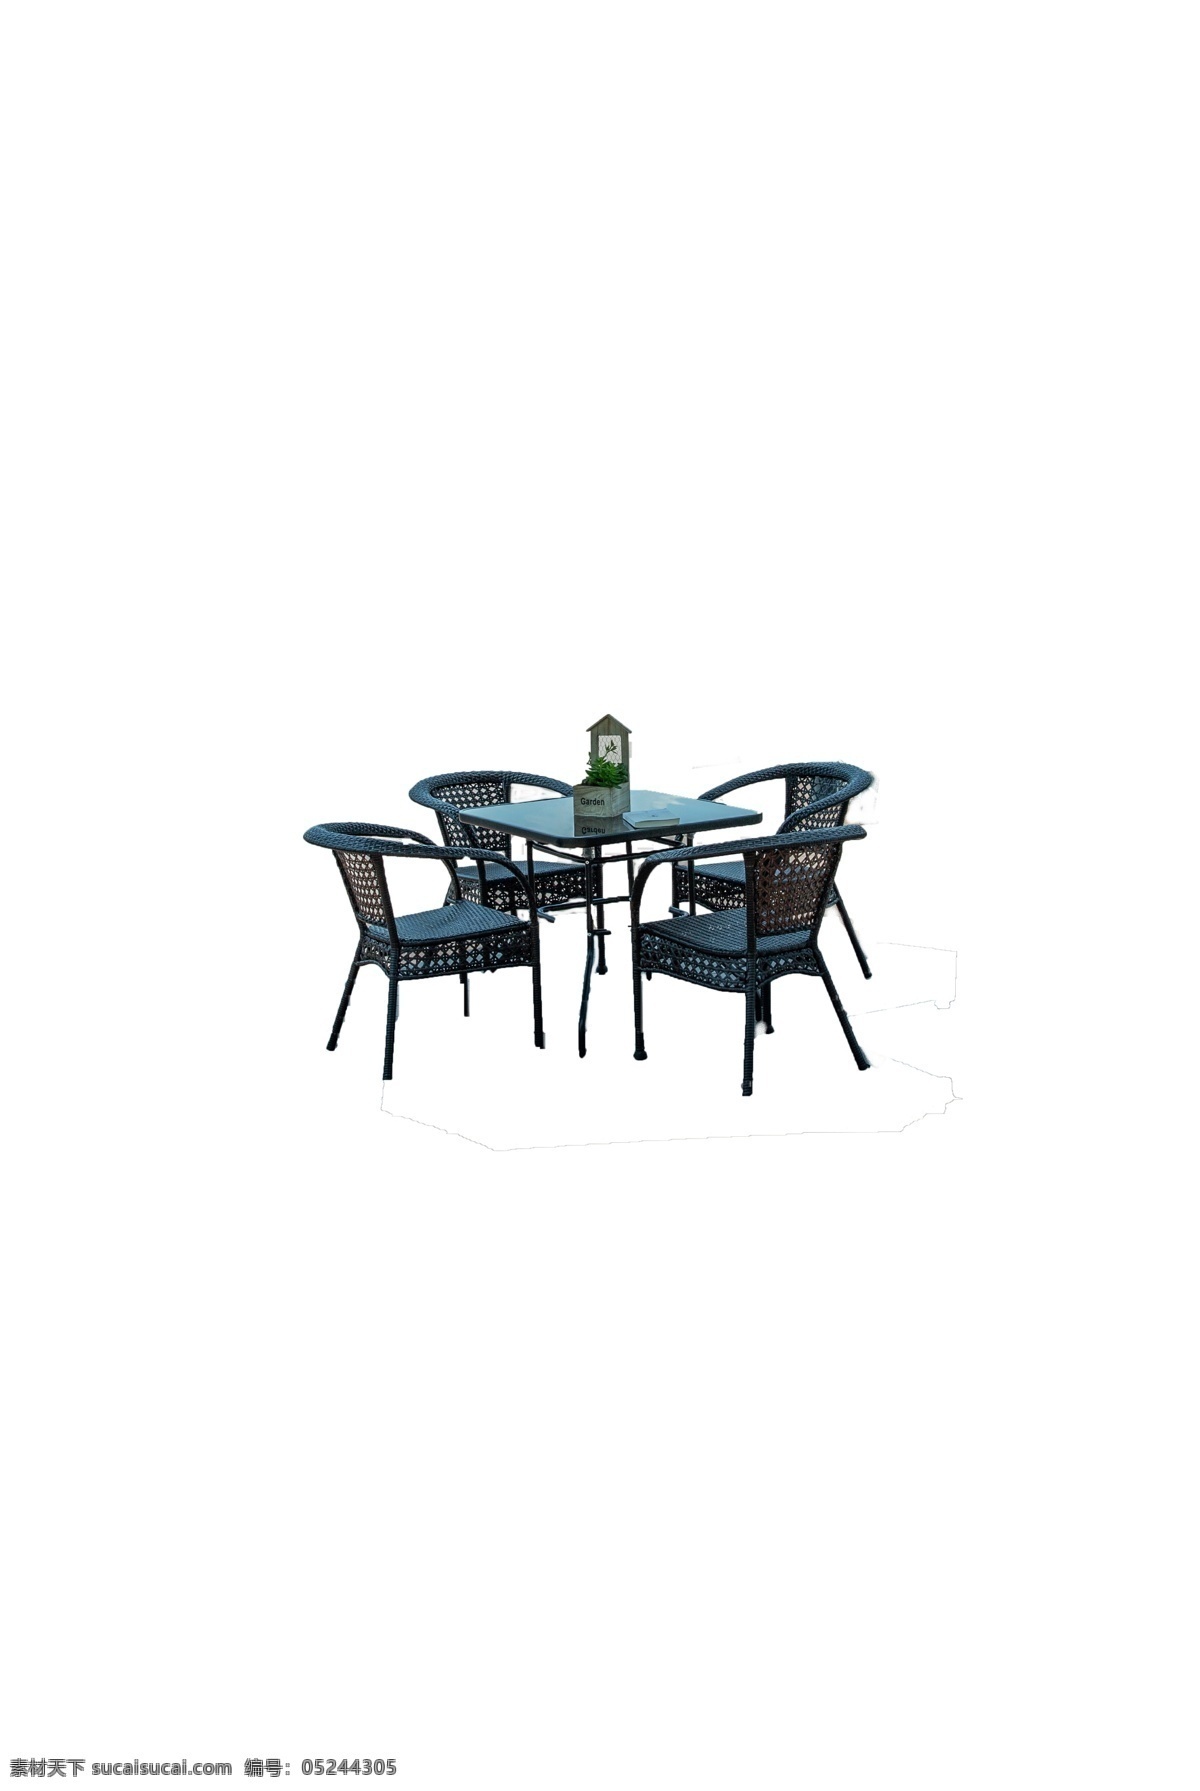 桌子 桌椅 配套 黑色 编织 有靠椅 透明 玻璃 桌 配套四把椅子 家居家具 夏日